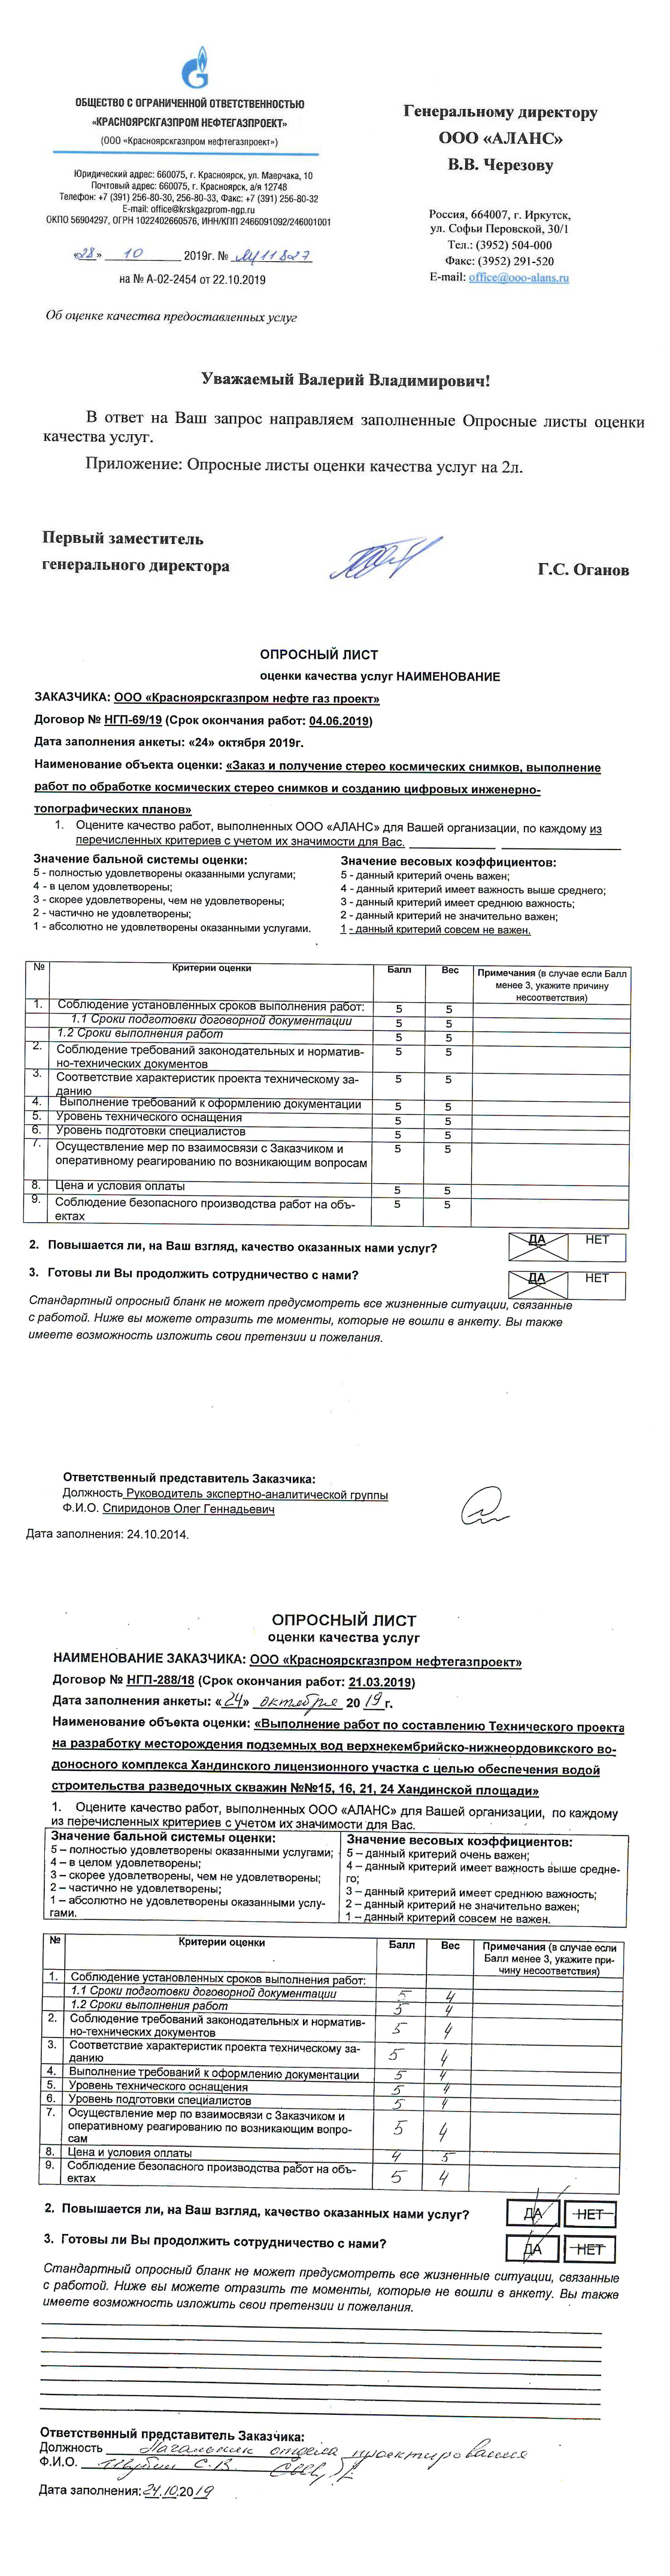 Оценка качества от Красноярскгазпром